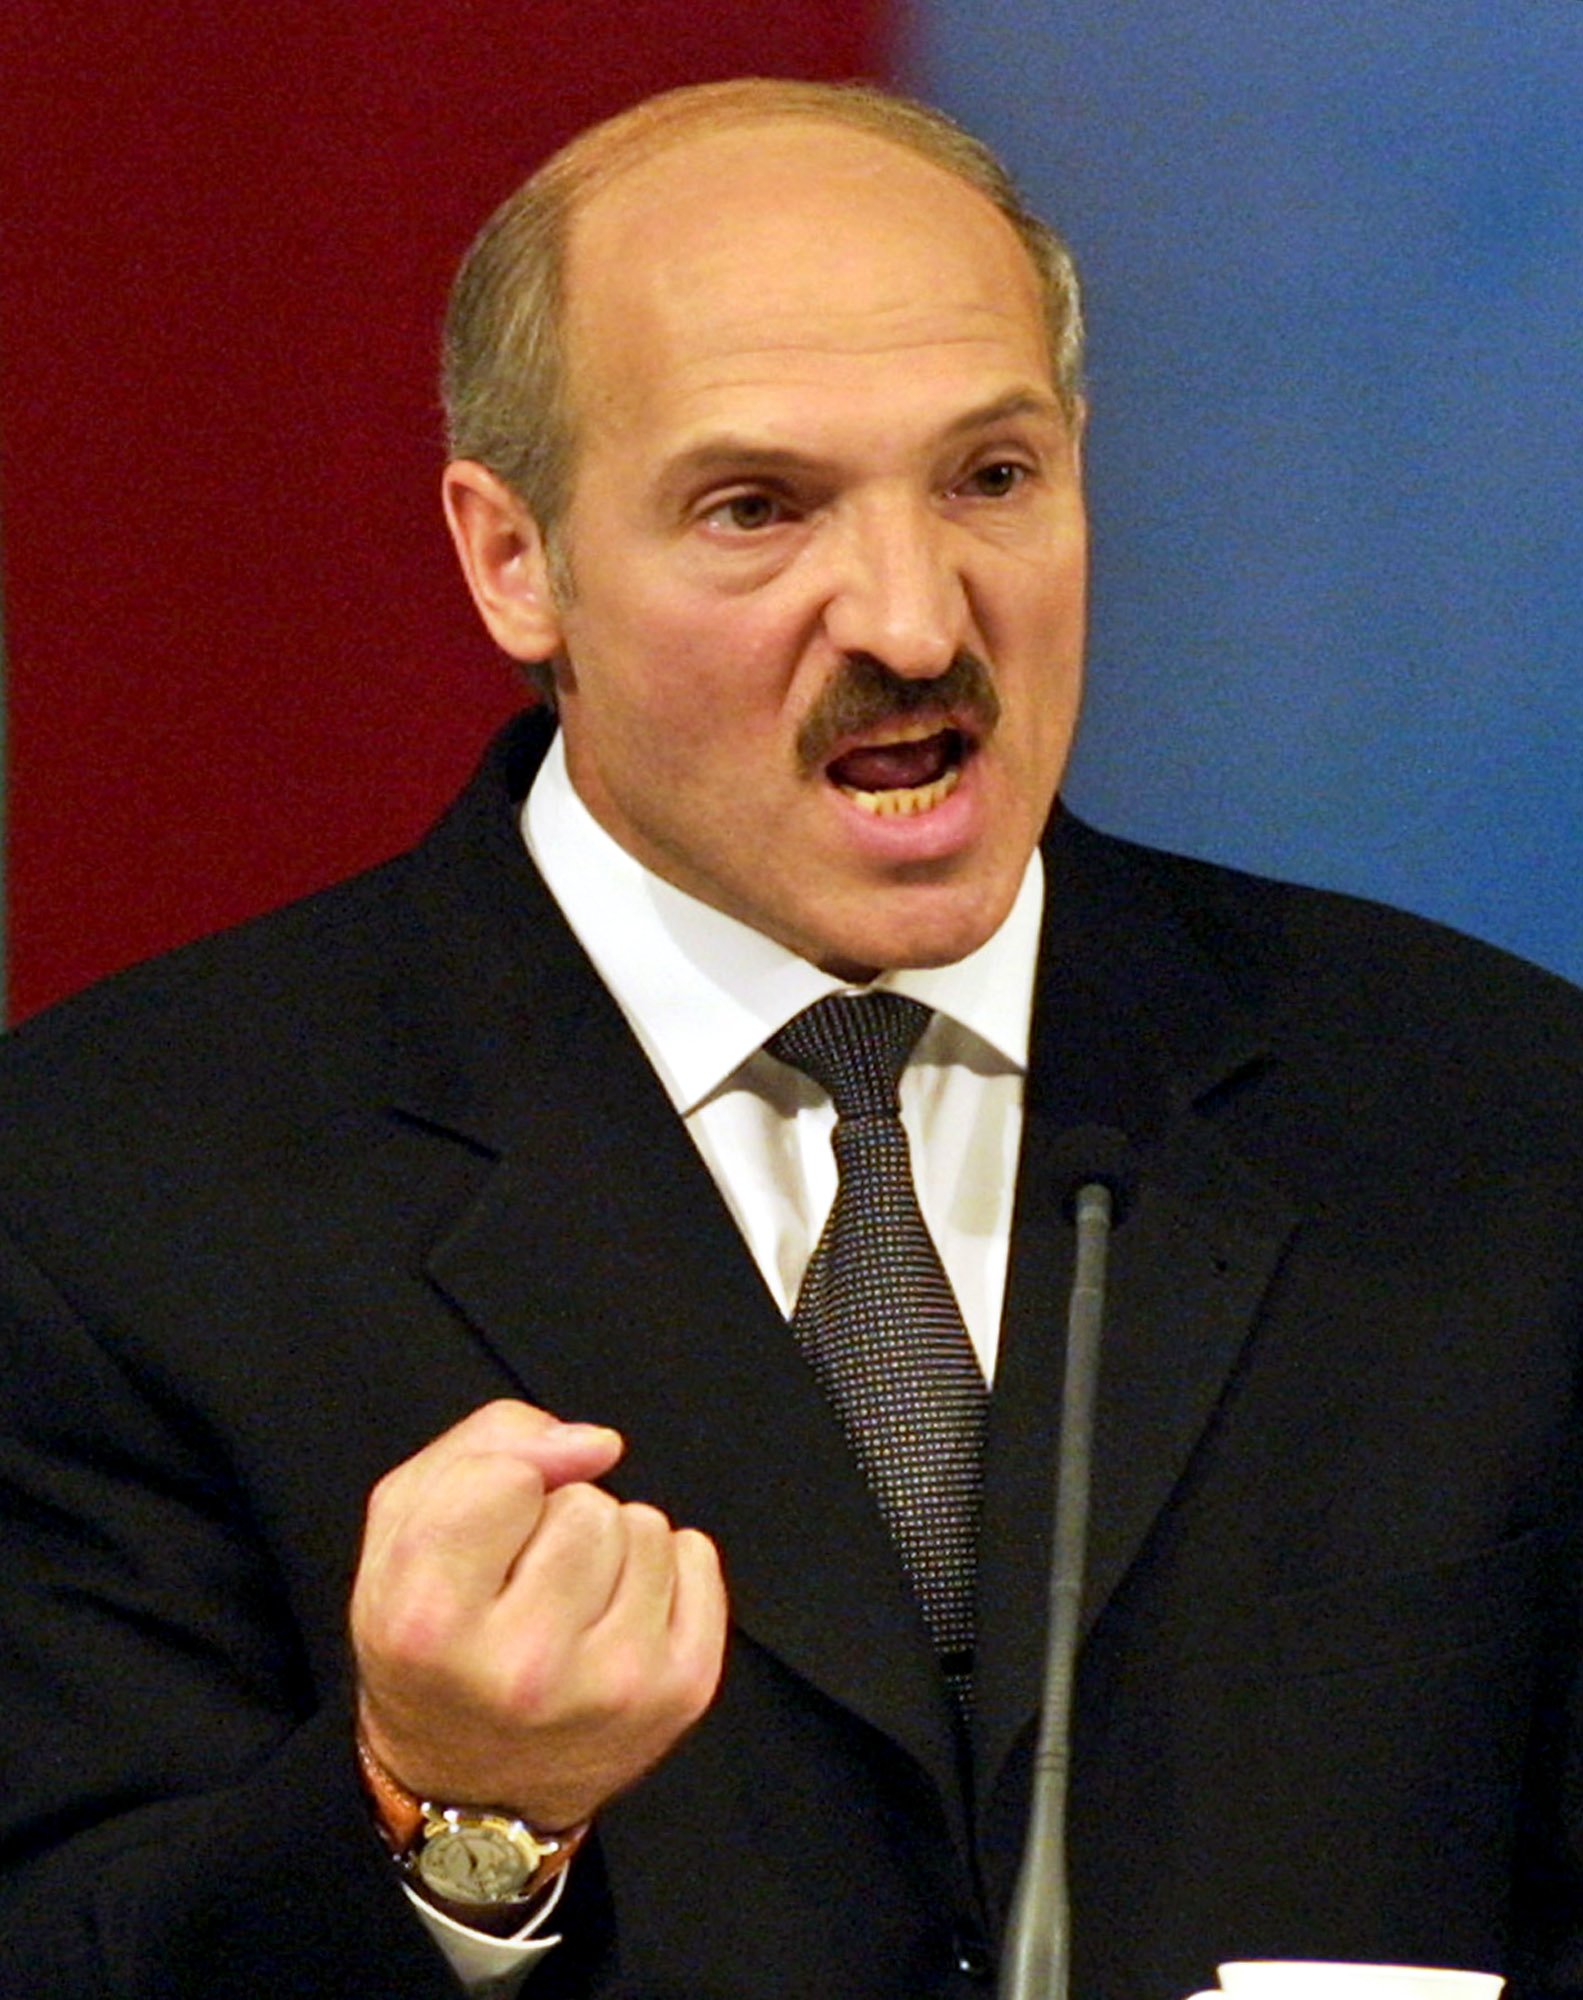 "Kozyol" säger Lukasjenko om Barroso.